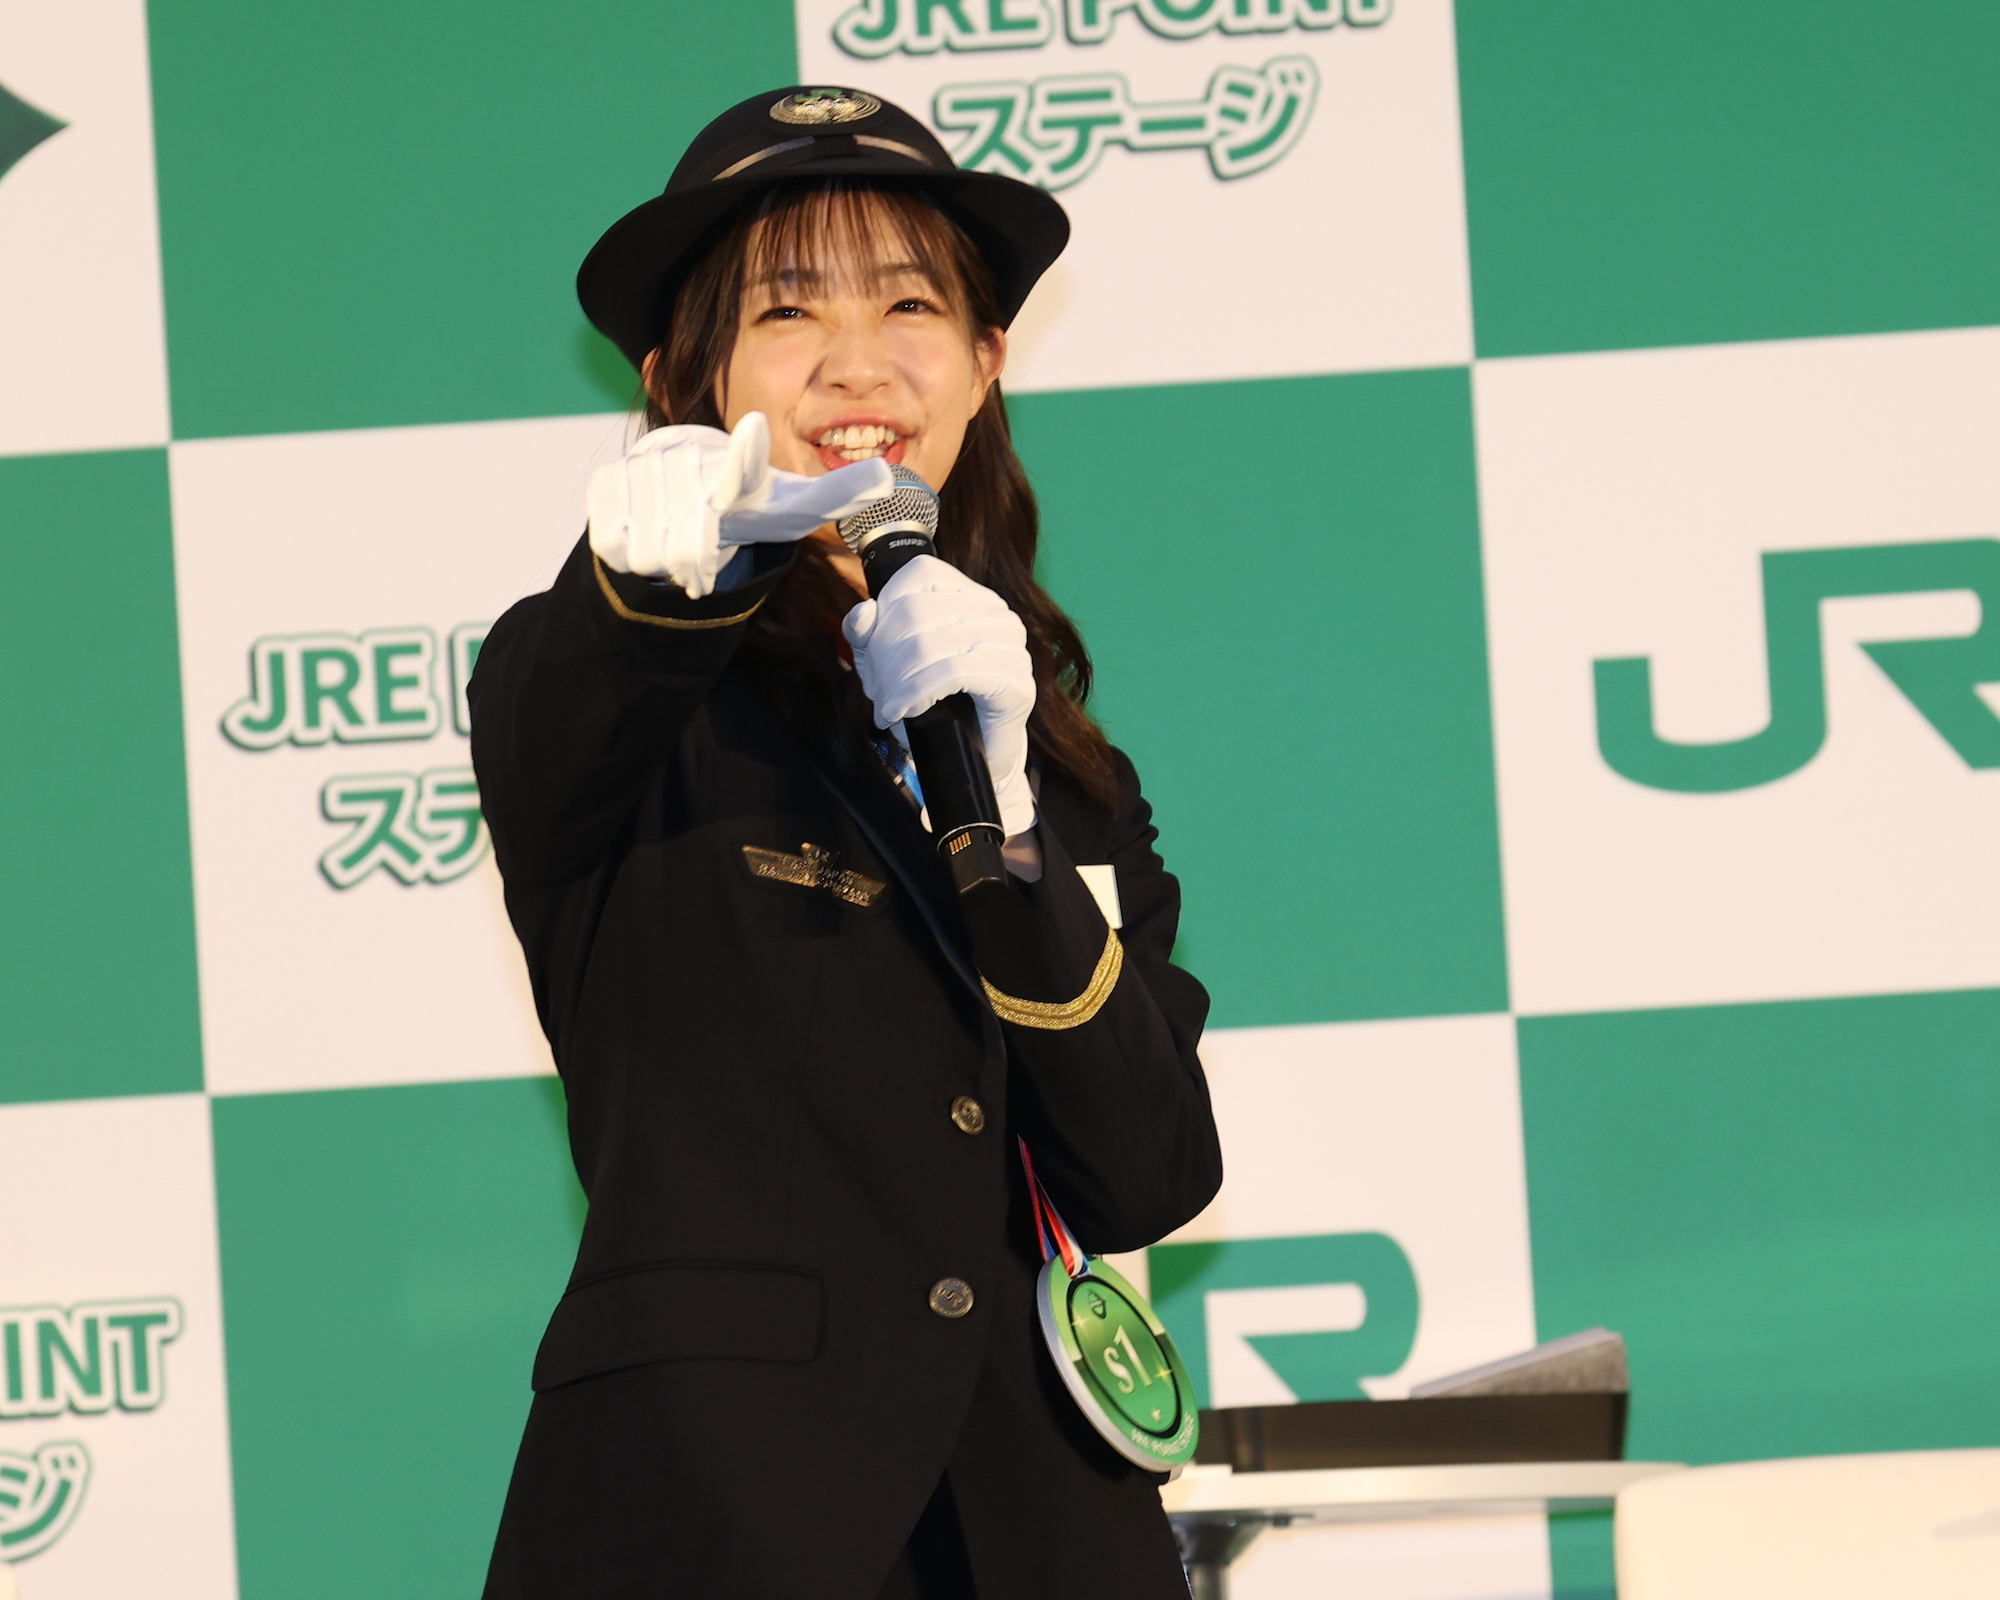 足立梨花。JR東日本による新サービス『JRE POINT ステージ』1日PR大使として登壇